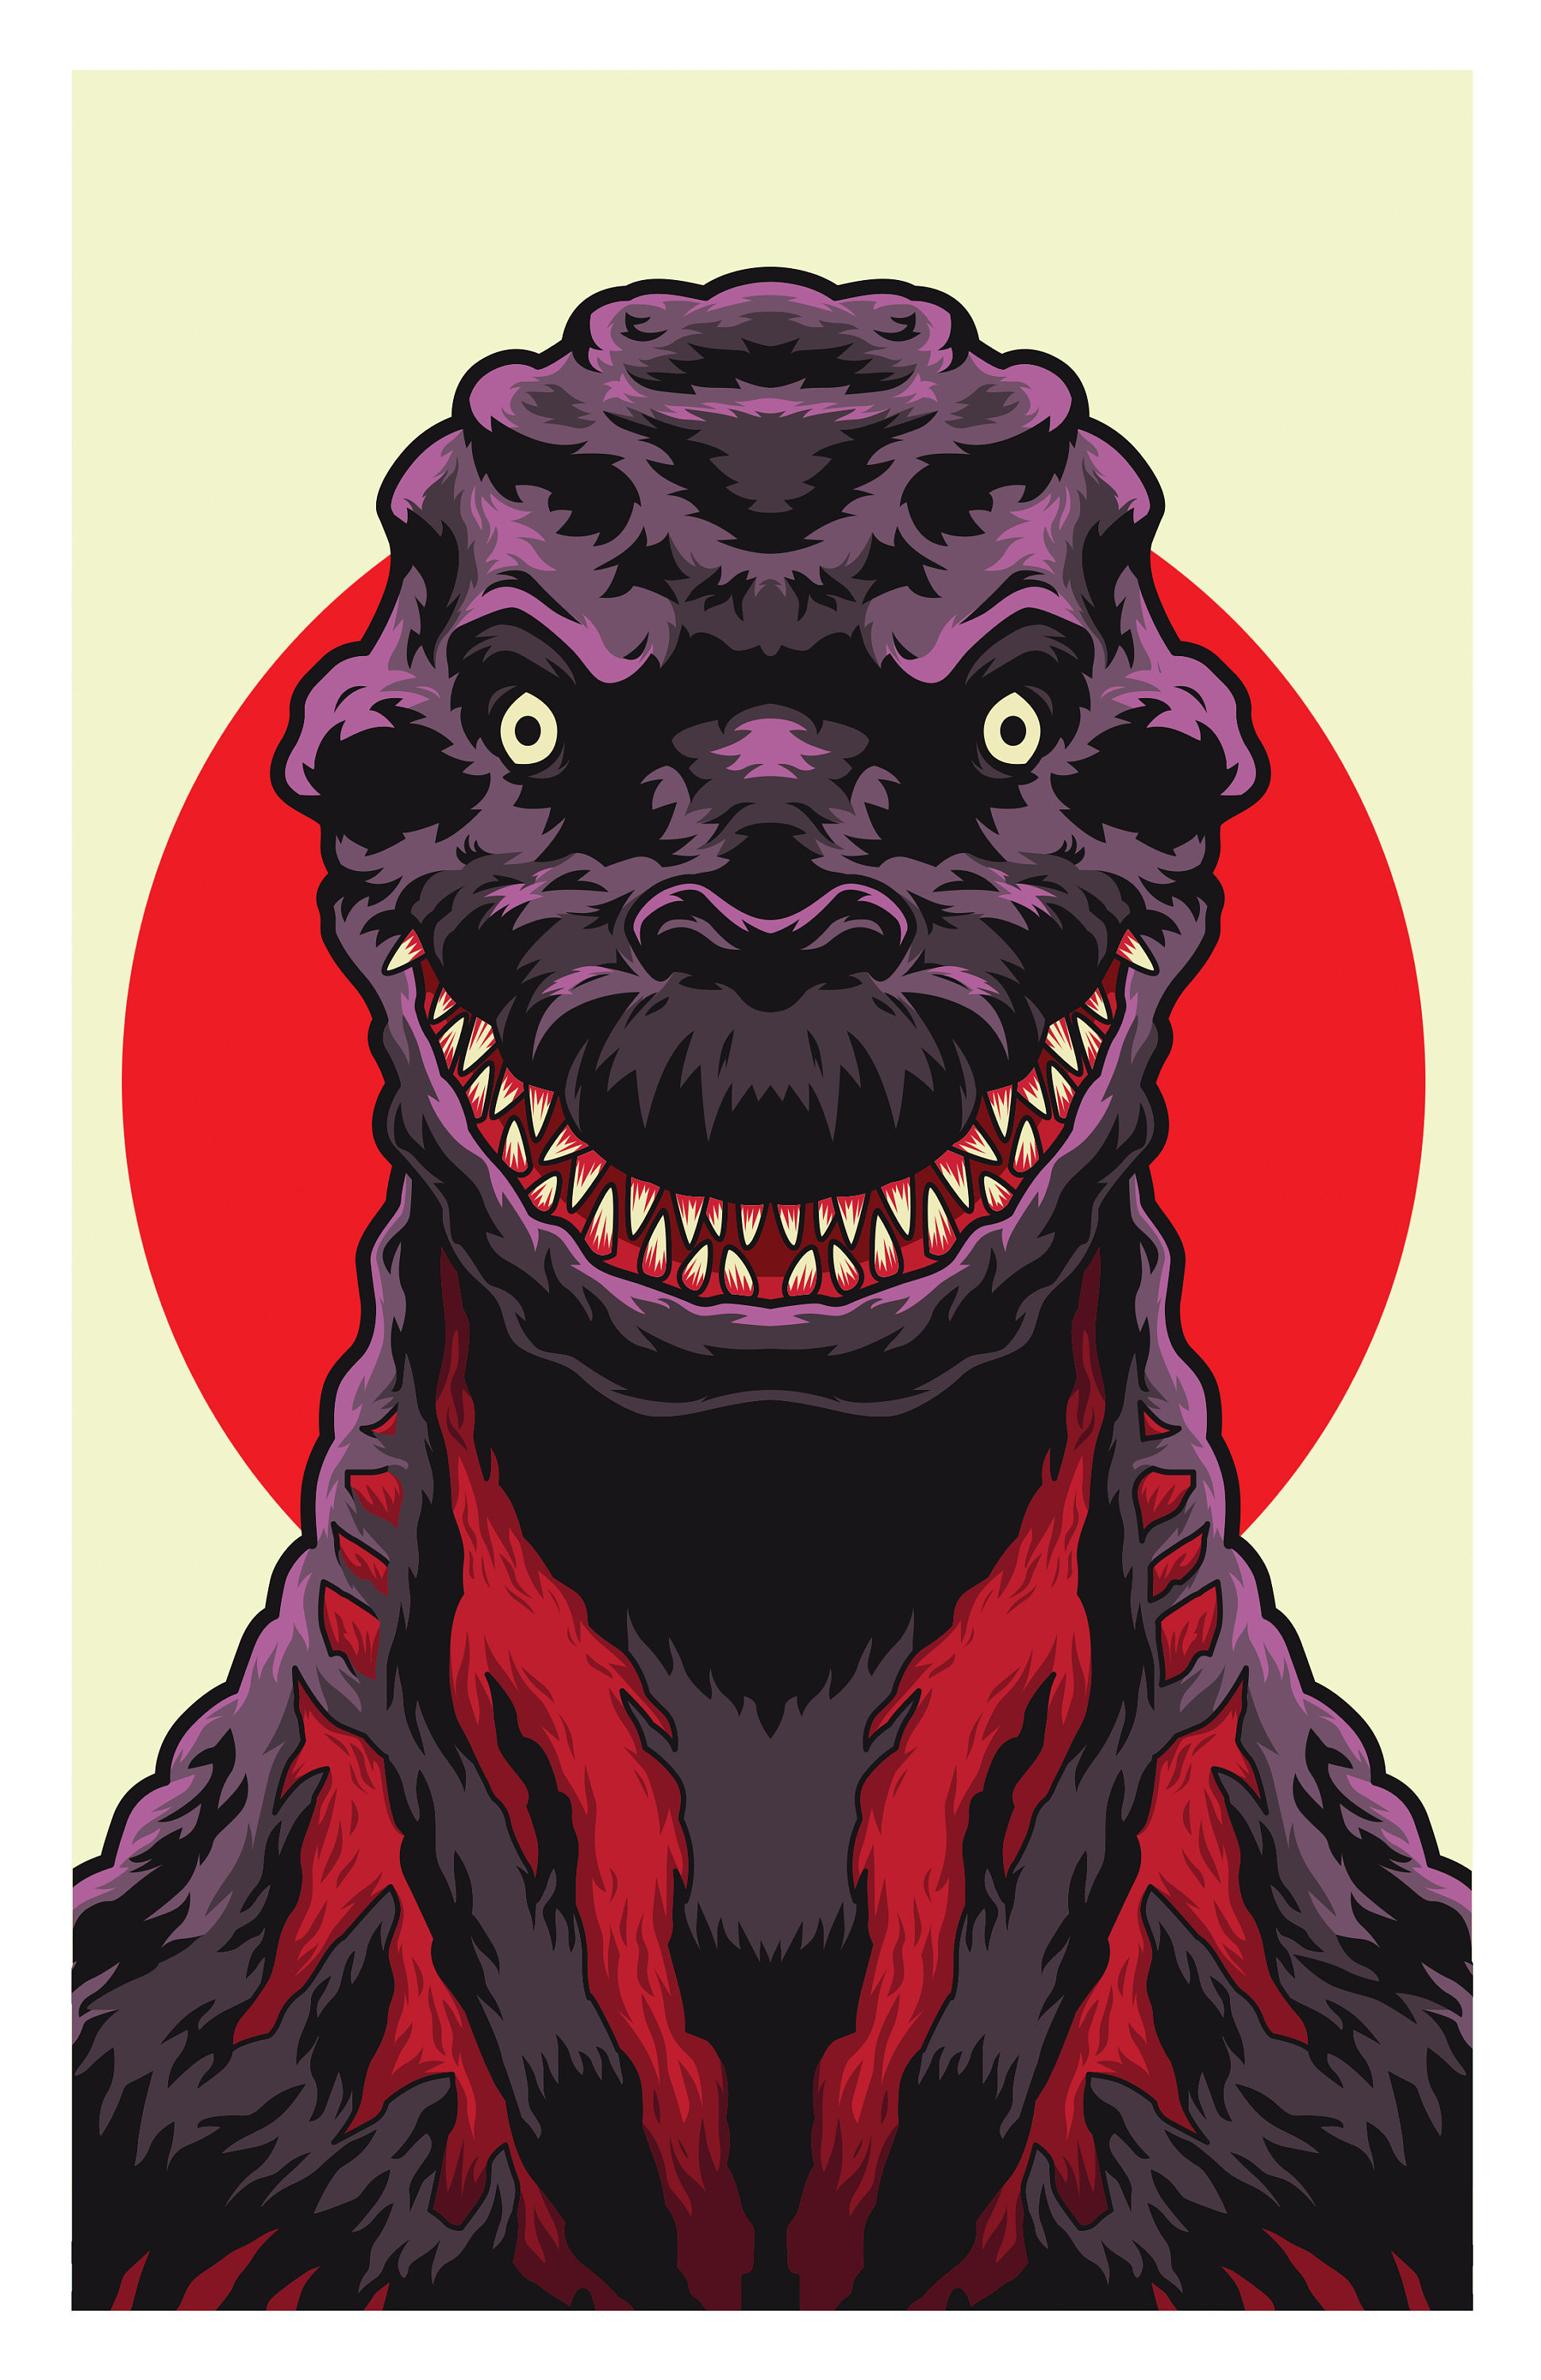 Cheap Japanese Art Shin Godzilla Poster - Allsoymade